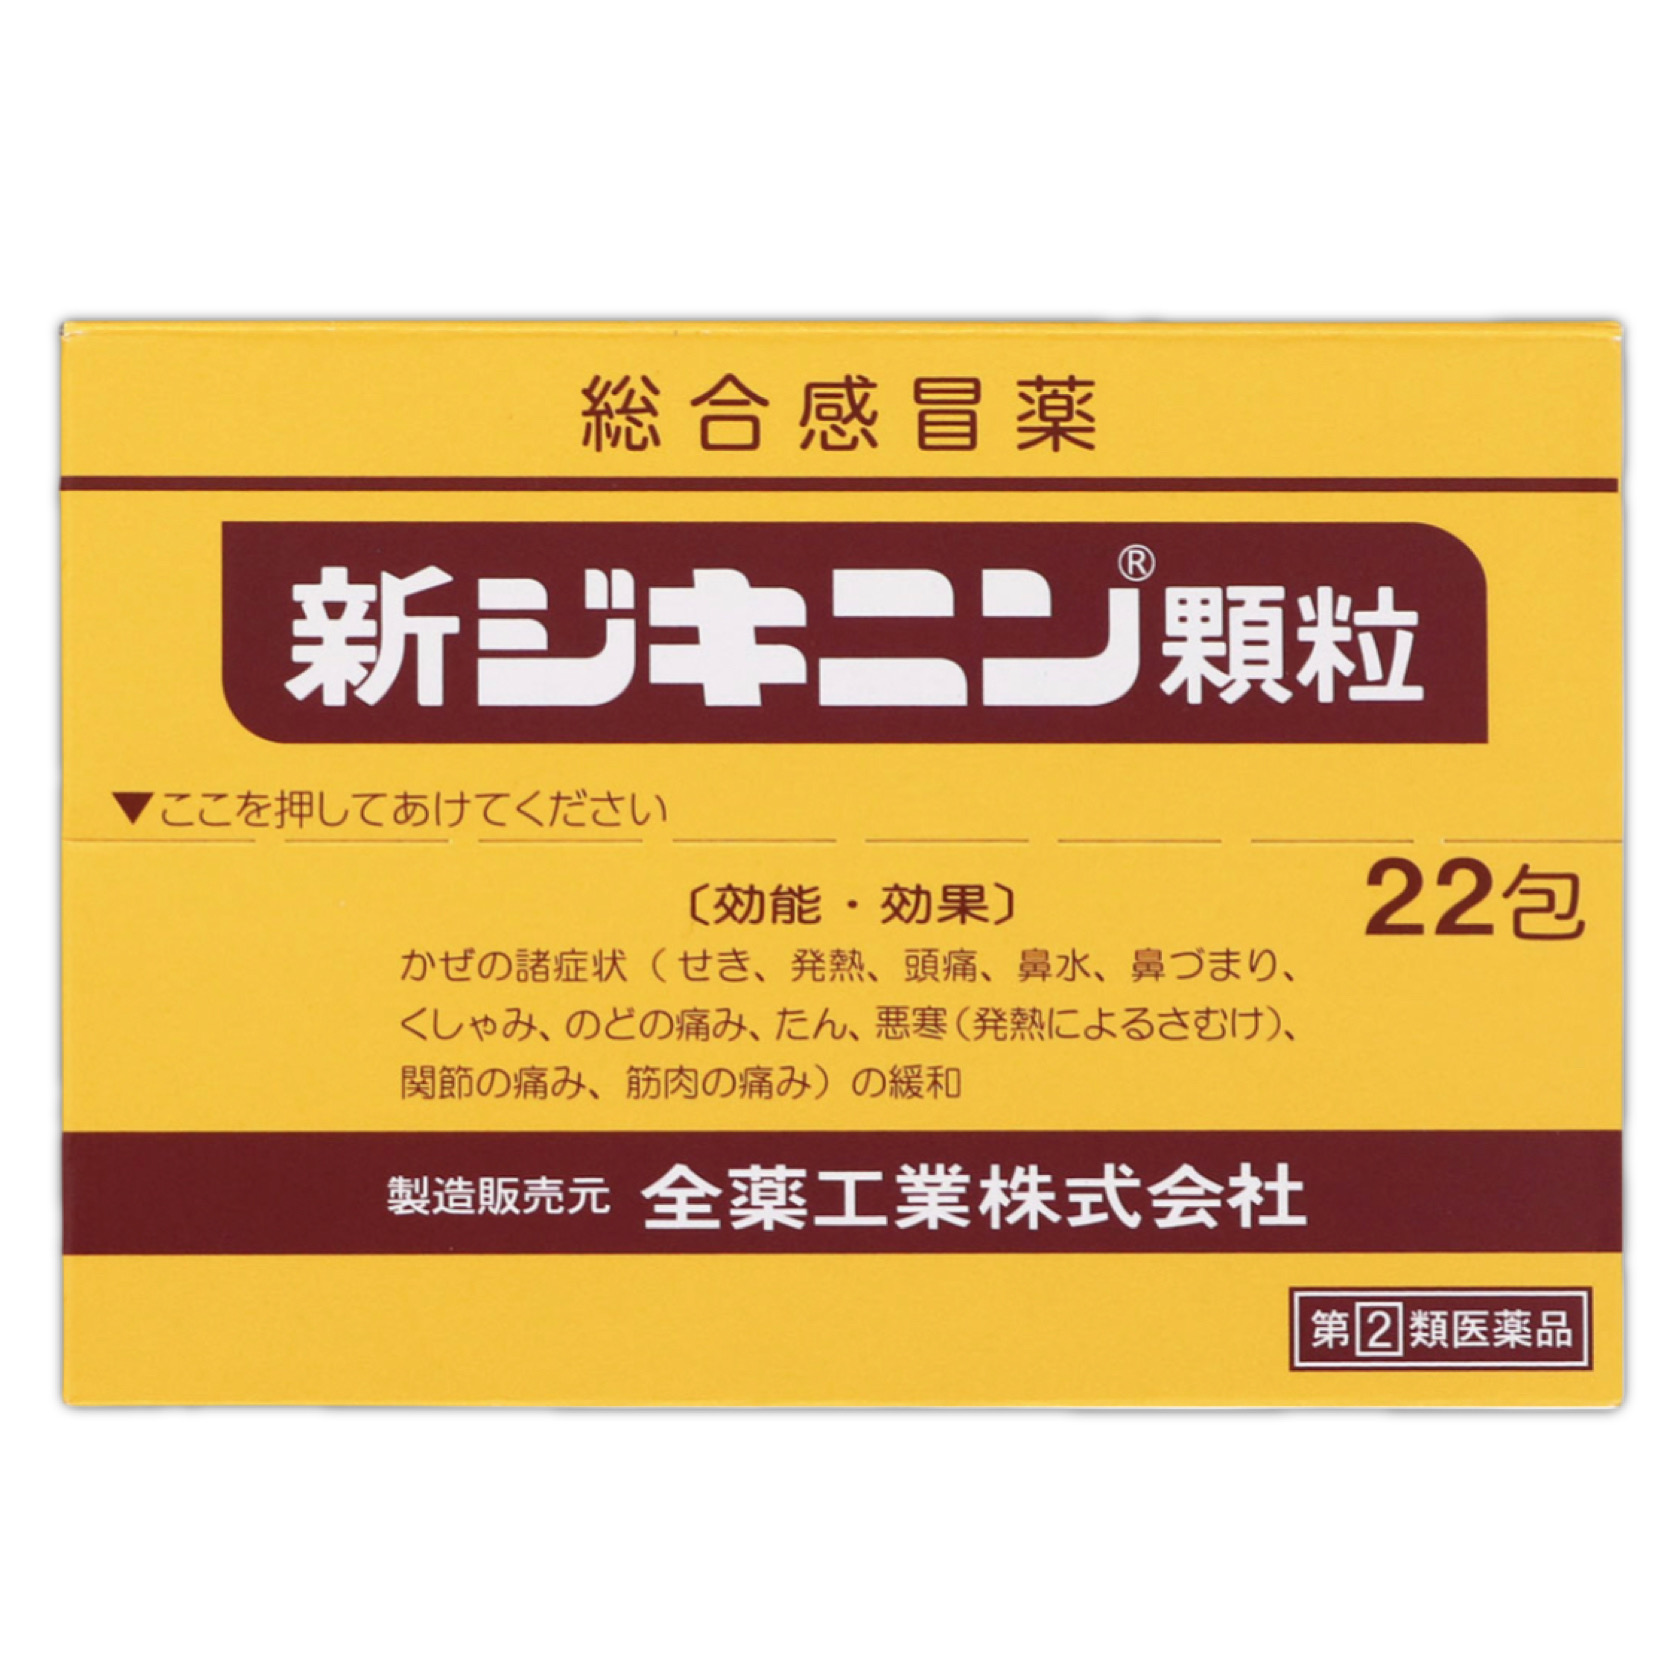 Zenyaku Kogyou Inc Jikinin 全藥工業 新Jikinin顆粒 綜合感冒藥 22包【指定第2類醫薬品】